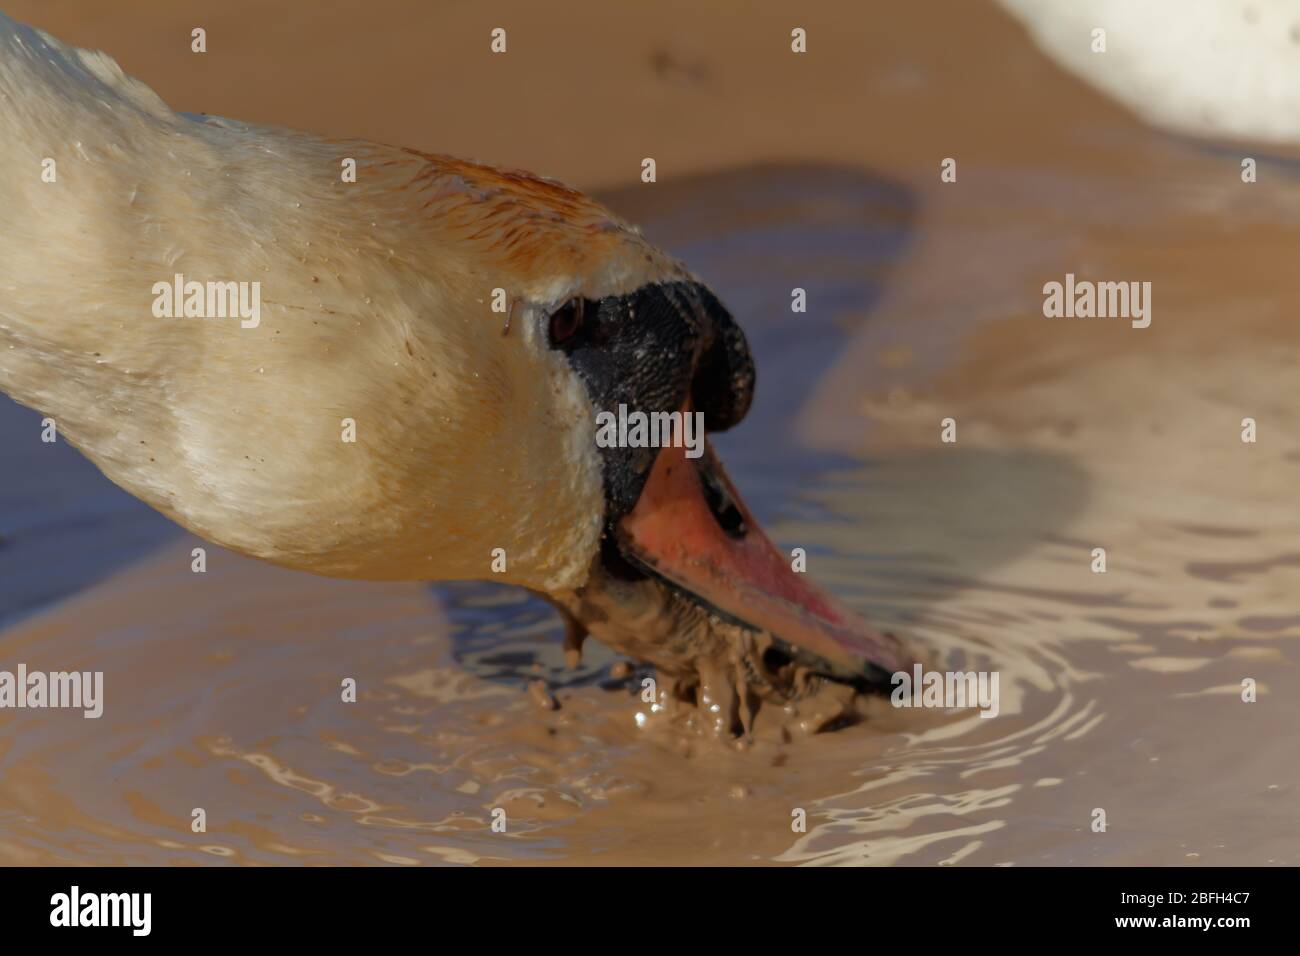 Swan drinking muddy water Stock Photo